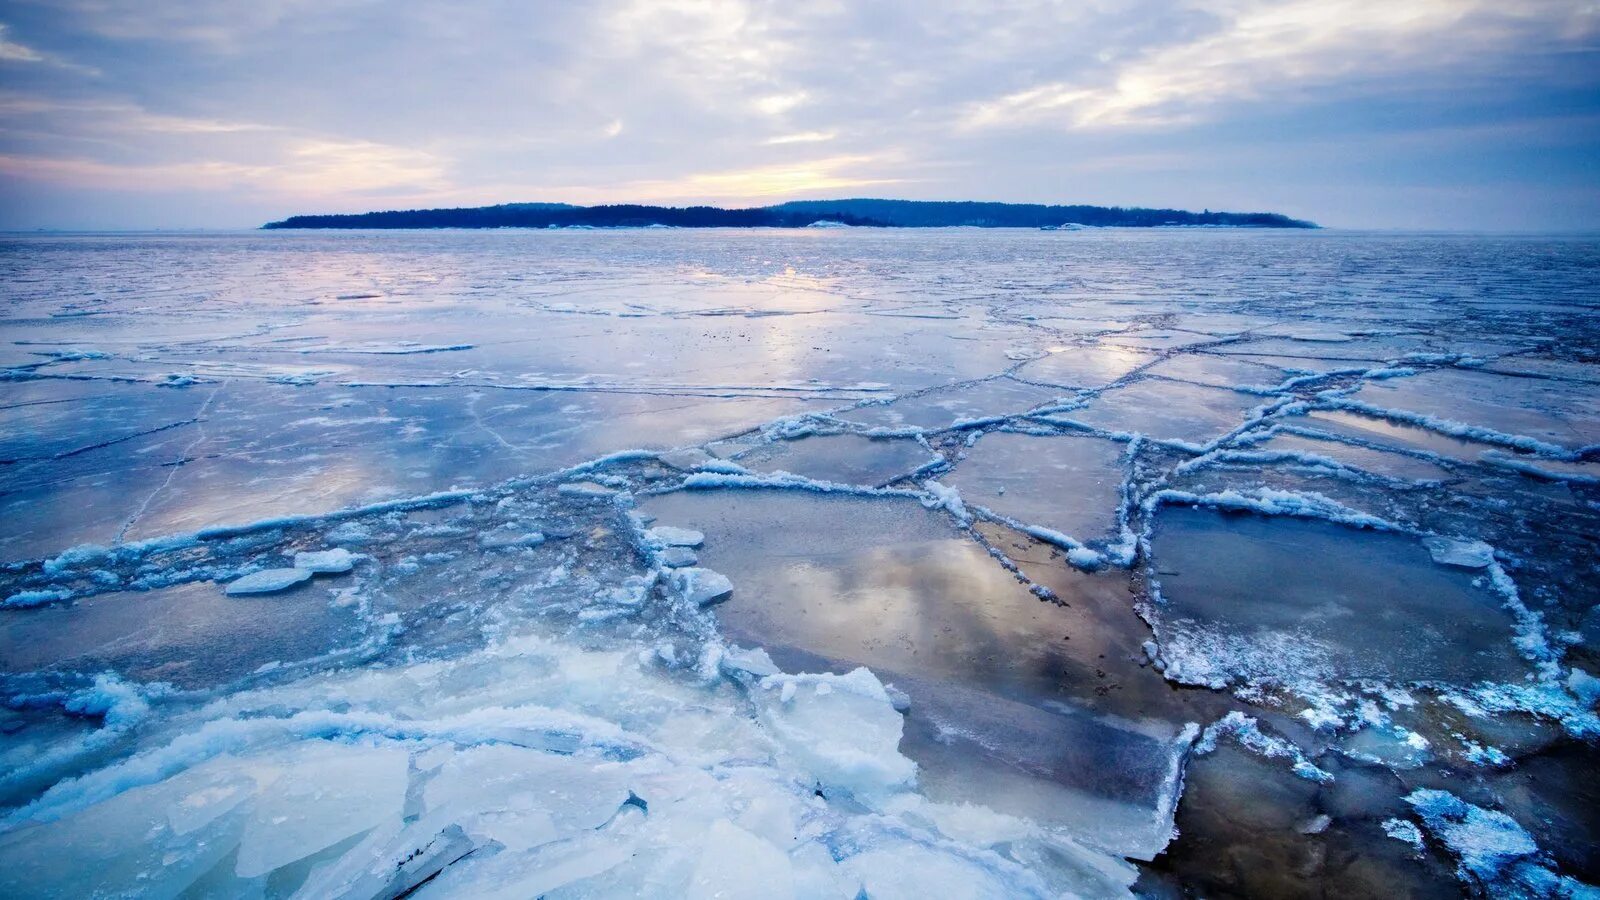 Лед 3 океан. Северный Ледовитый океан Восточно-Сибирское море. Арктика Северный Ледовитый океан. Ледяной Покров Северного Ледовитого океана. Льды Арктики северооедовитого океана.